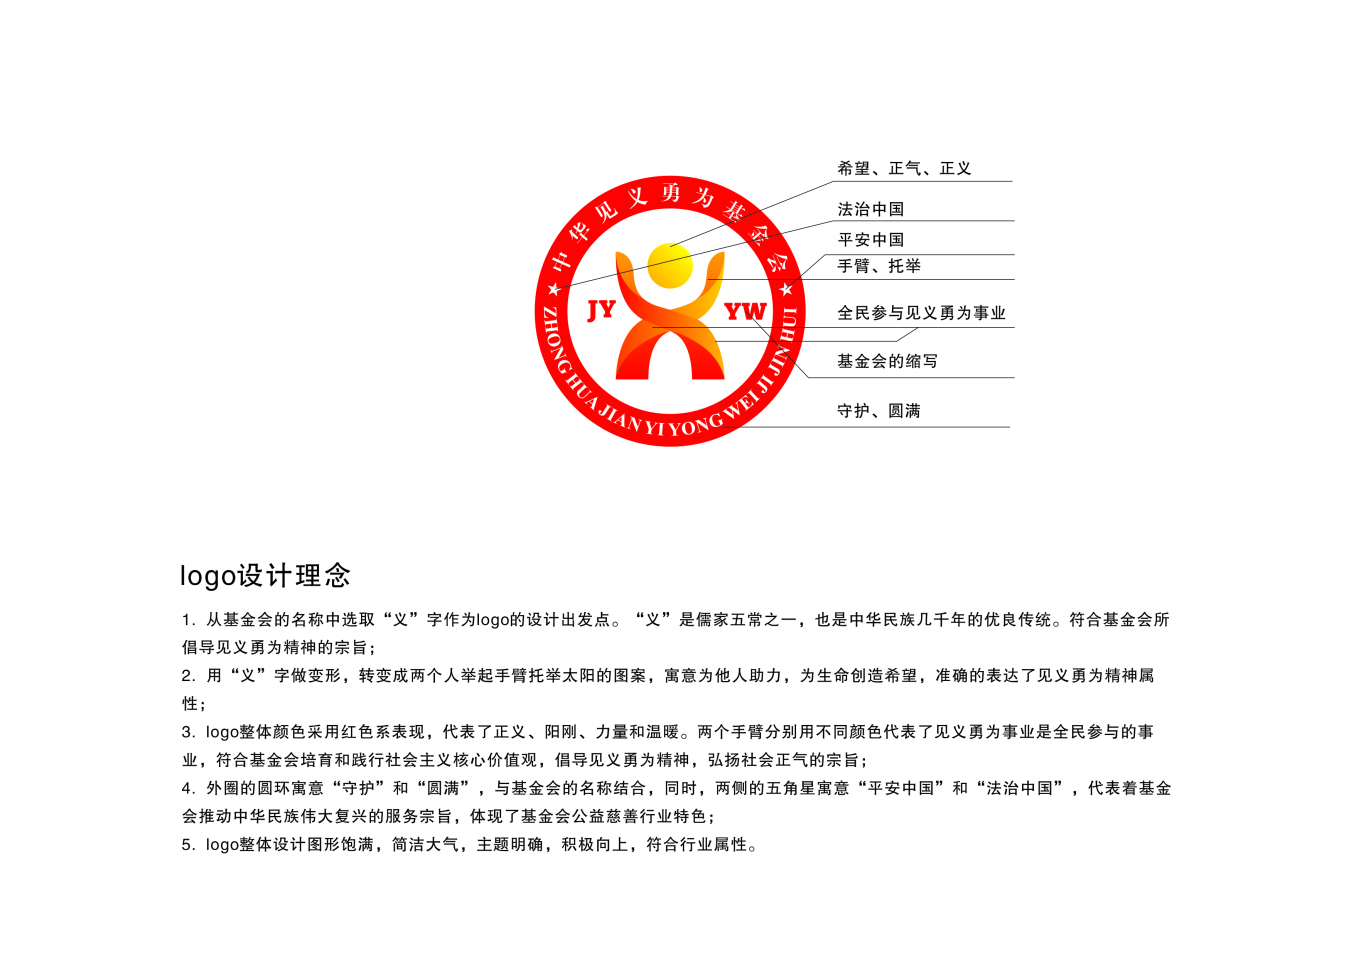 中华见义勇为基金会logo图0